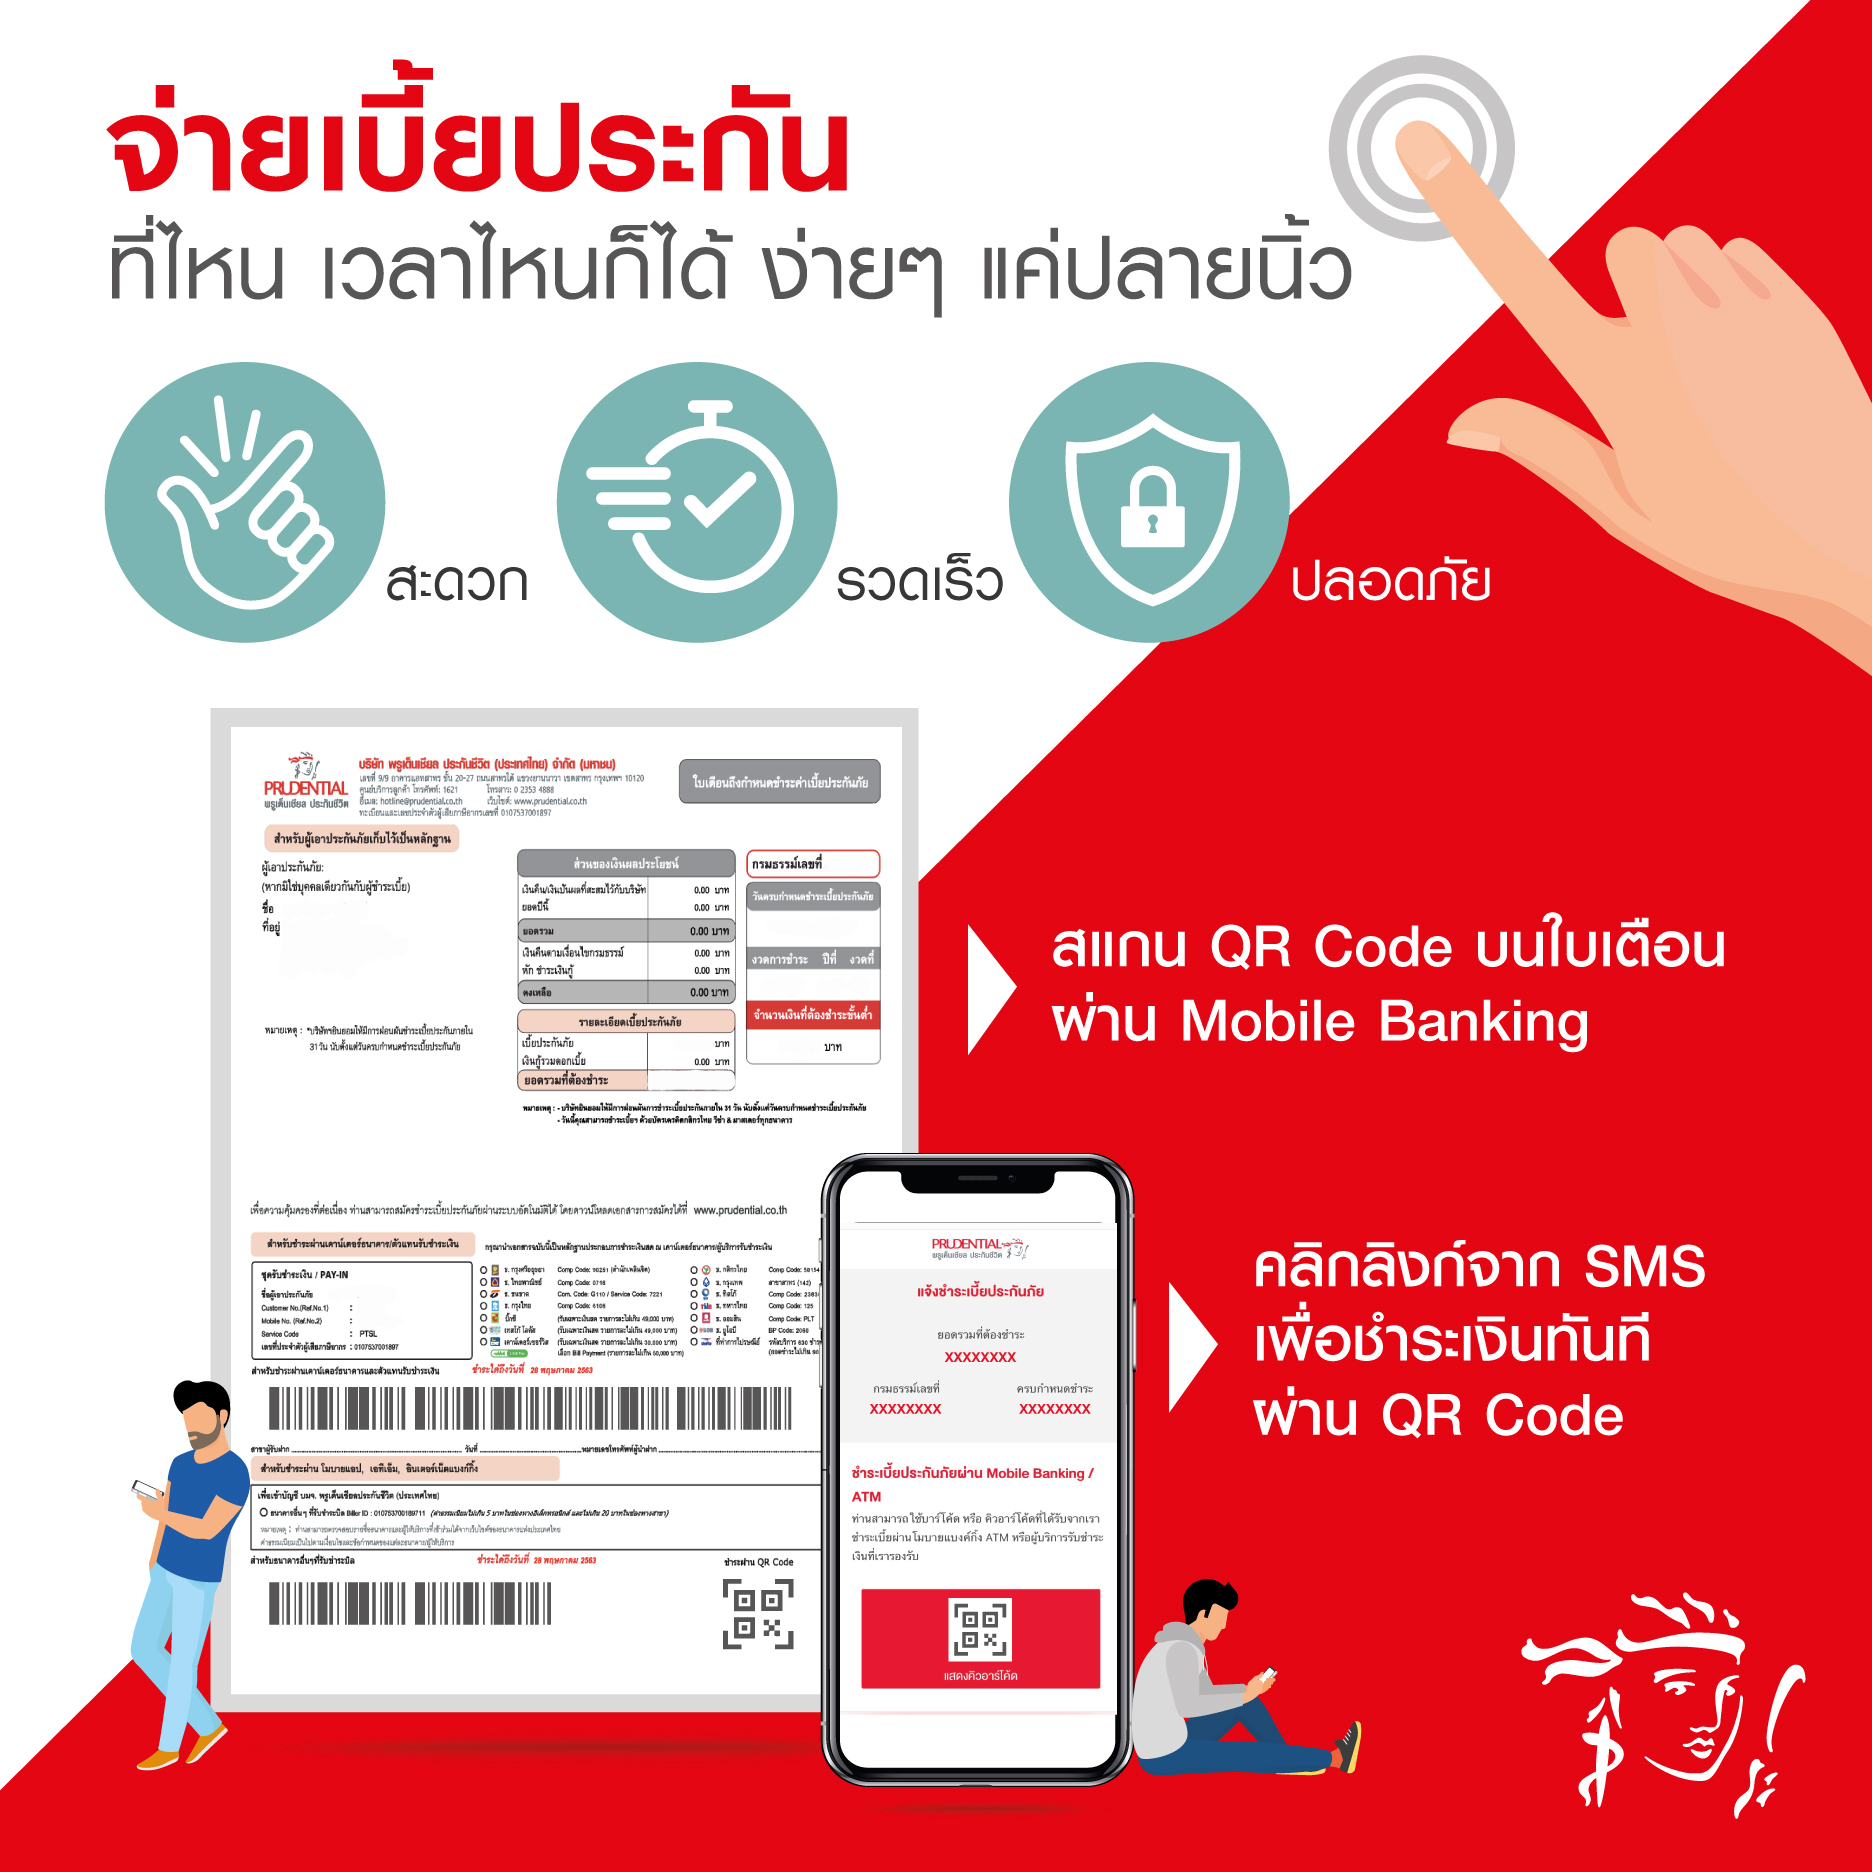 พรูเด็นเชียล ประเทศไทย เปิดตัวบริการเคลมออนไลน์ (e-Claims) อีกระดับของความสะดวกสบายในการเรียกร้องสินไหมทดแทน